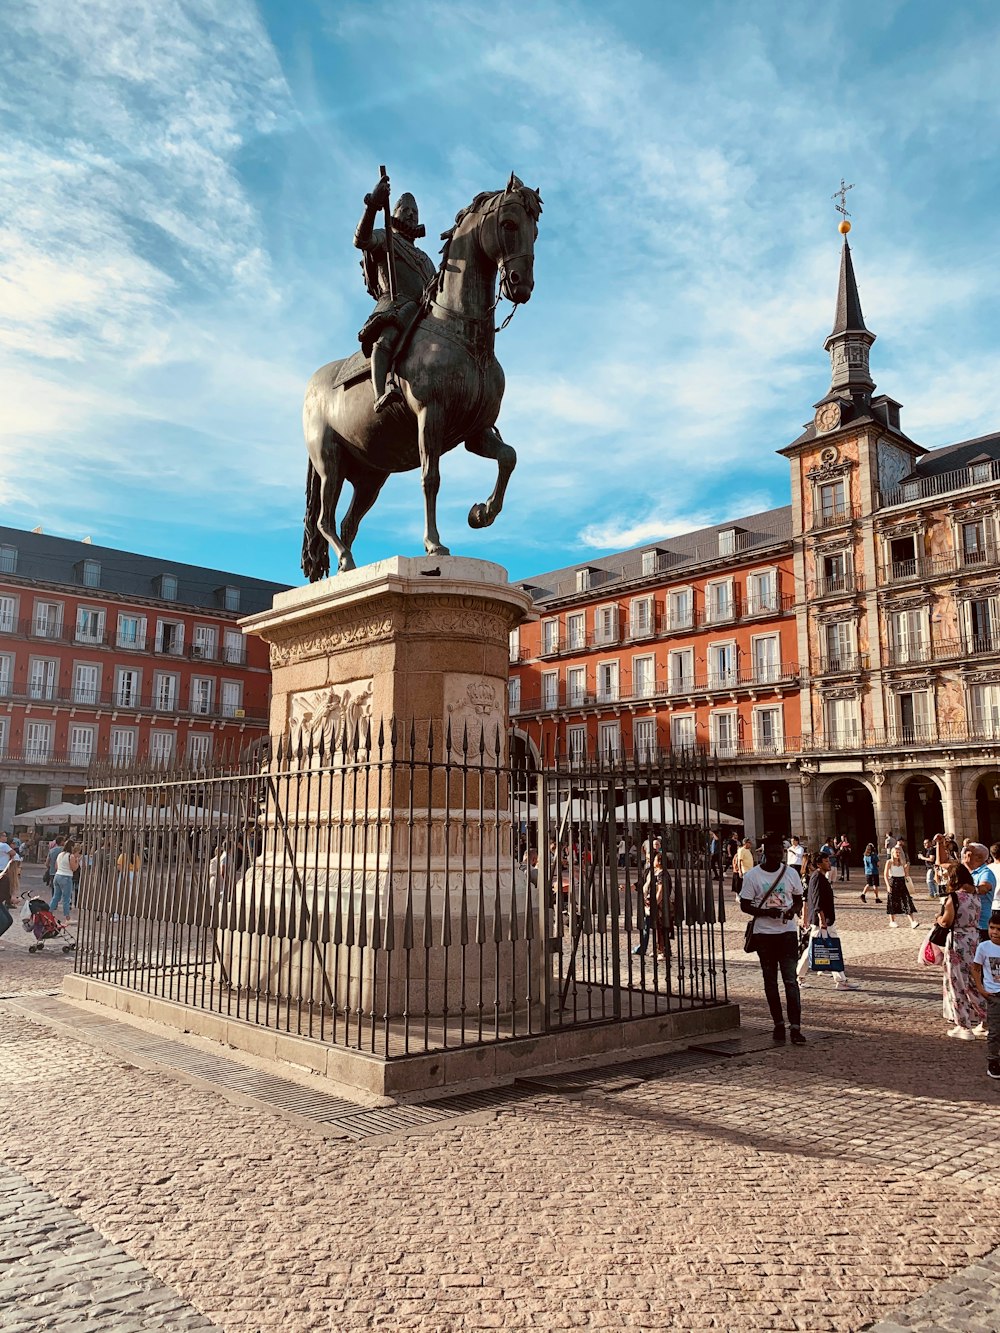 Hombre montando estatua de caballo en el pilar cerca de la gente y los edificios durante el día